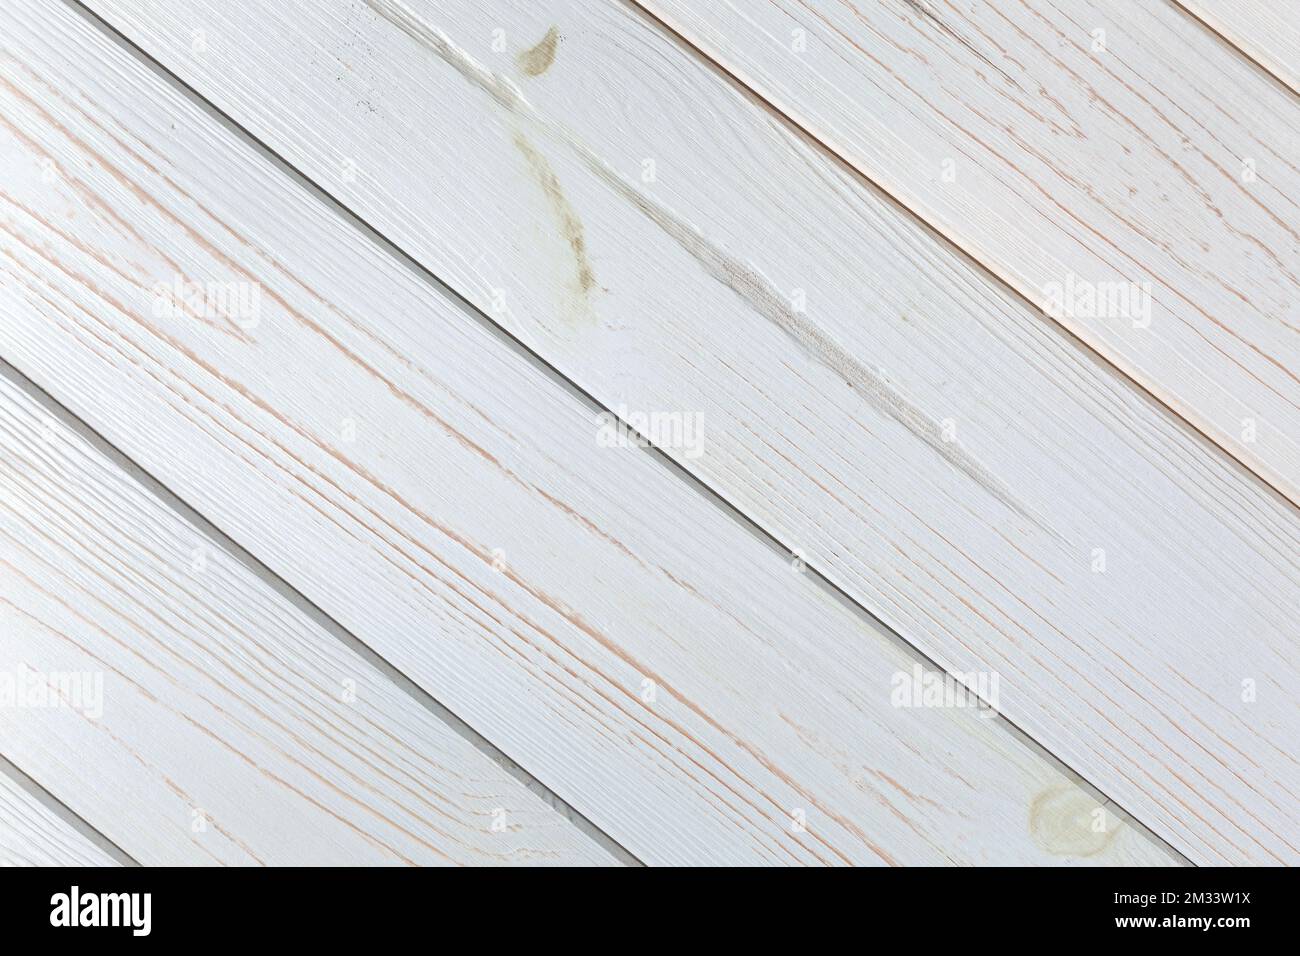 Der Hintergrund des alten Holzes ist grau gefärbt. Platz für Text oder Design. Stockfoto